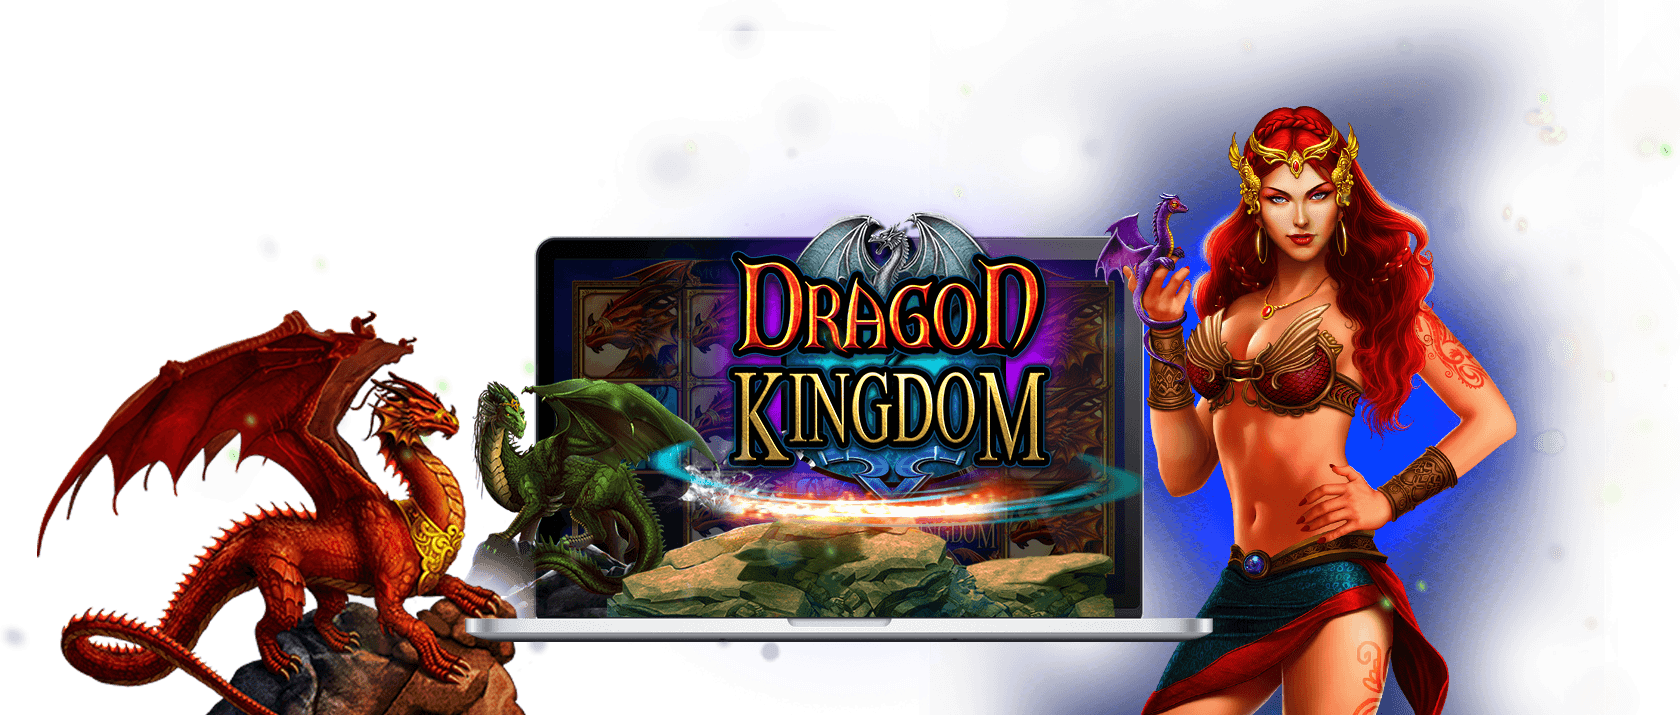 Dragon Kingdom Slot Logo Dragon Kingdom